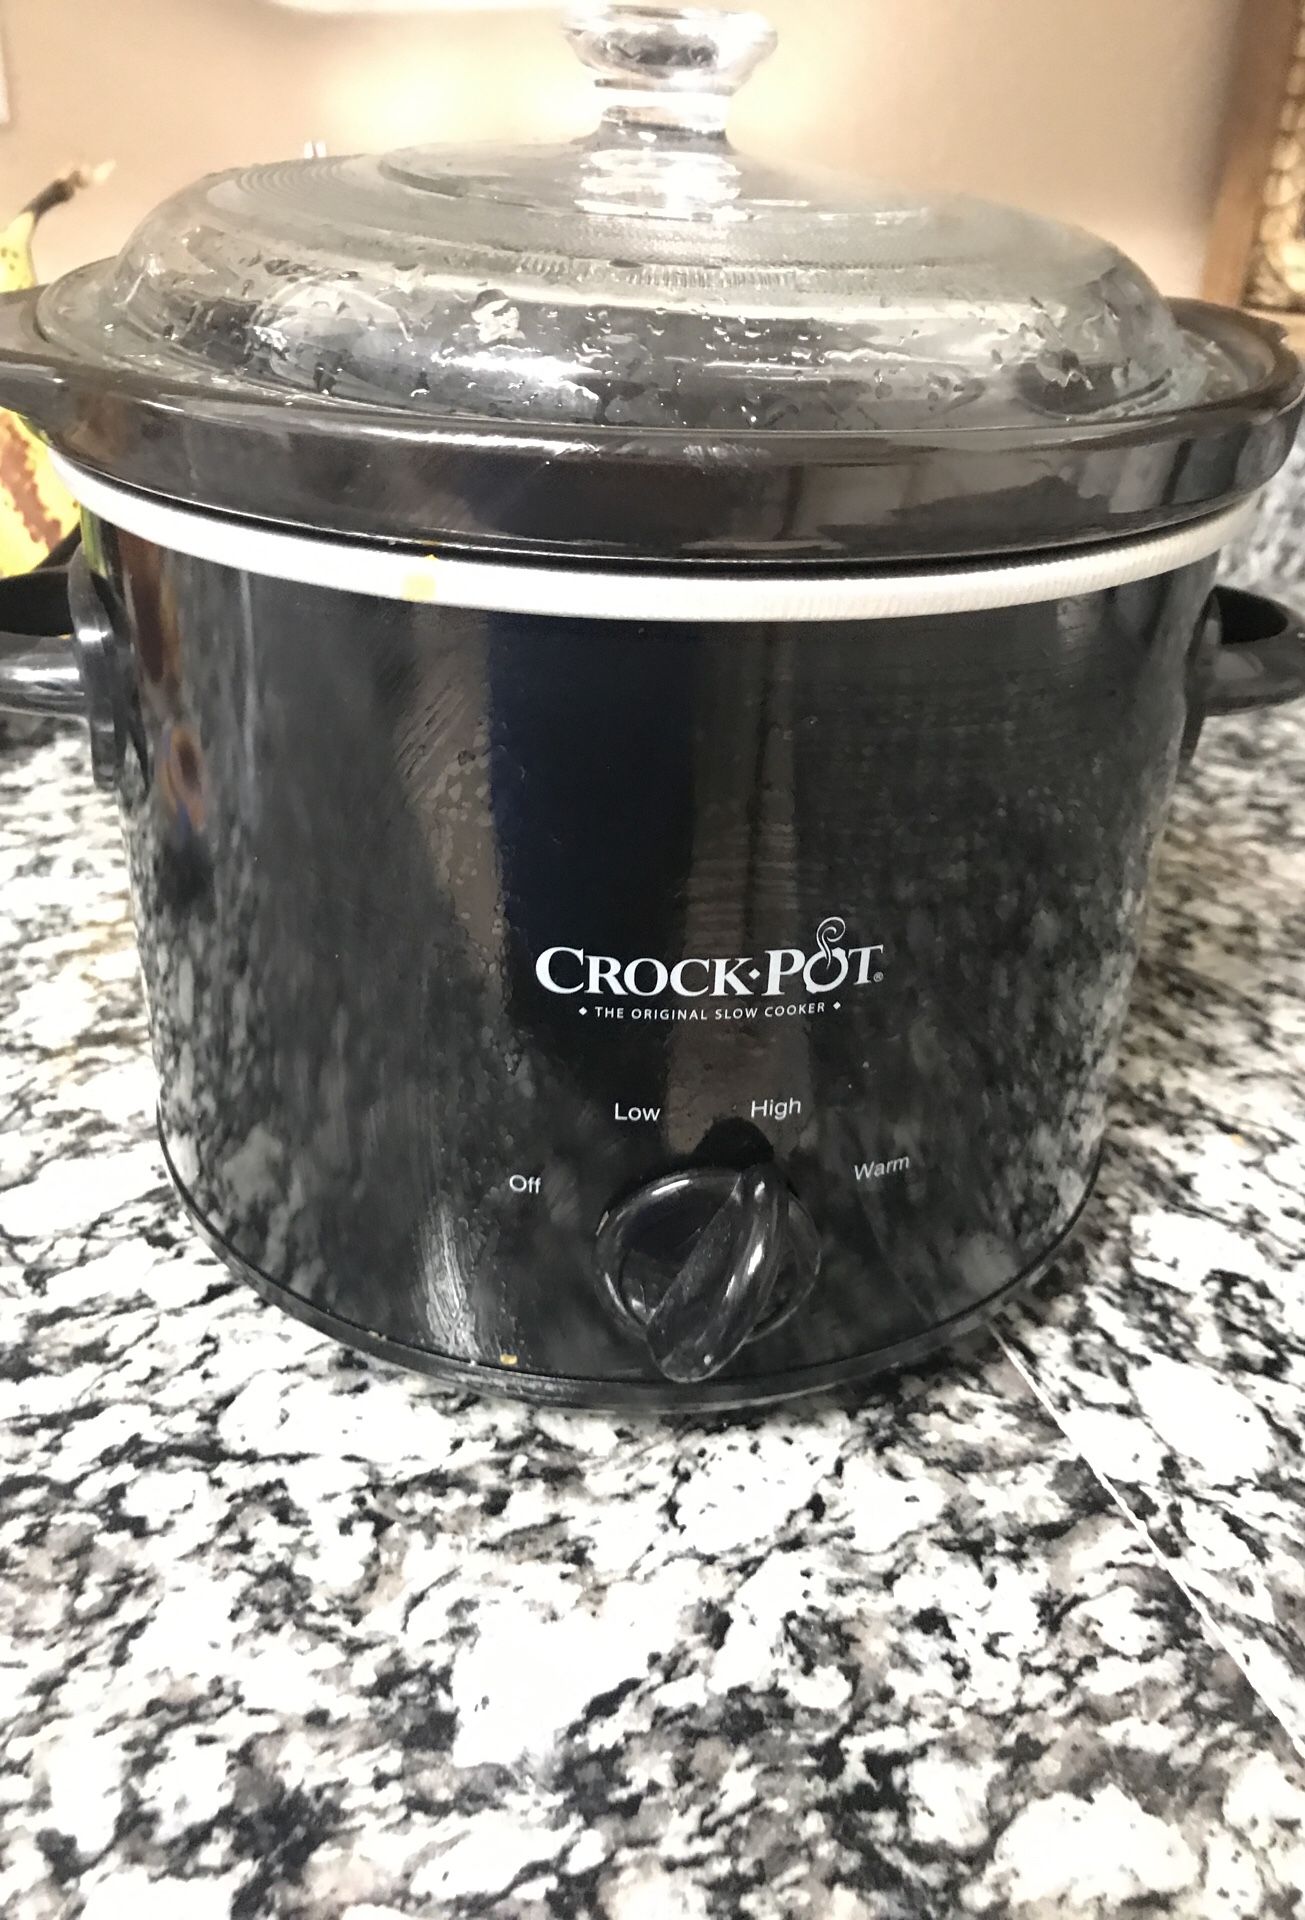 Small crock pot $15